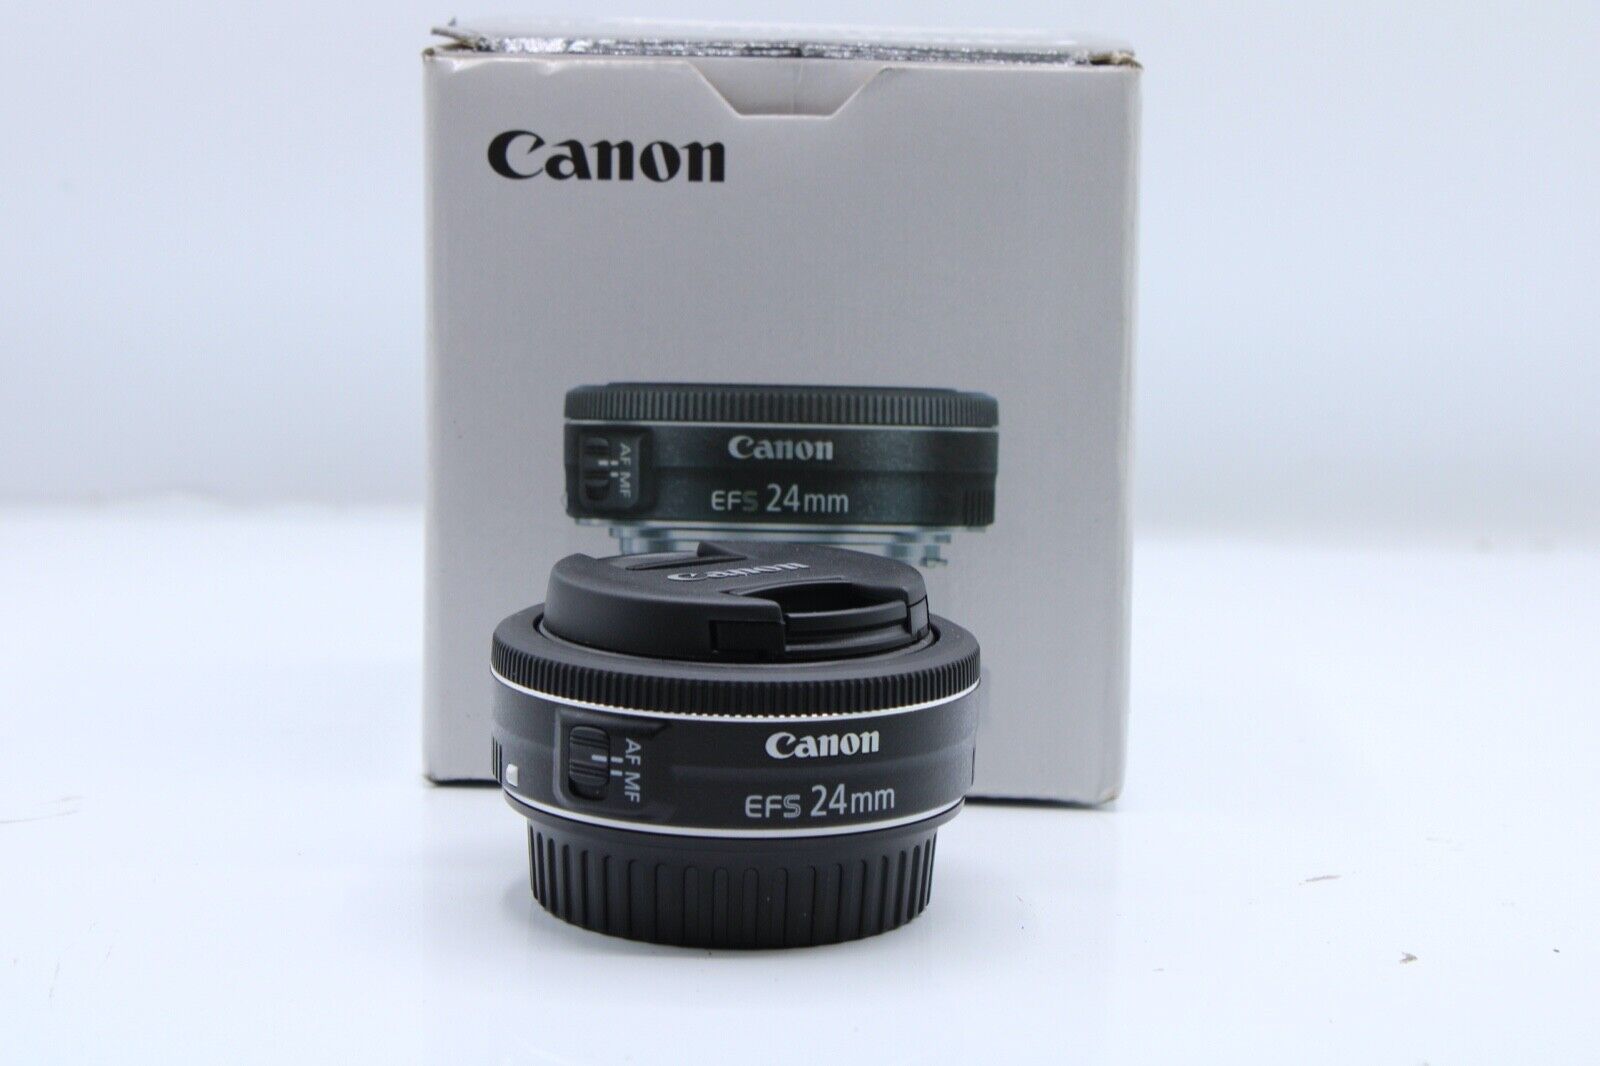 Canon Lens EF-S 24mm 1:2.8 STM 52mm Macro 0.16m/0.52ft Canon EFS 24mm